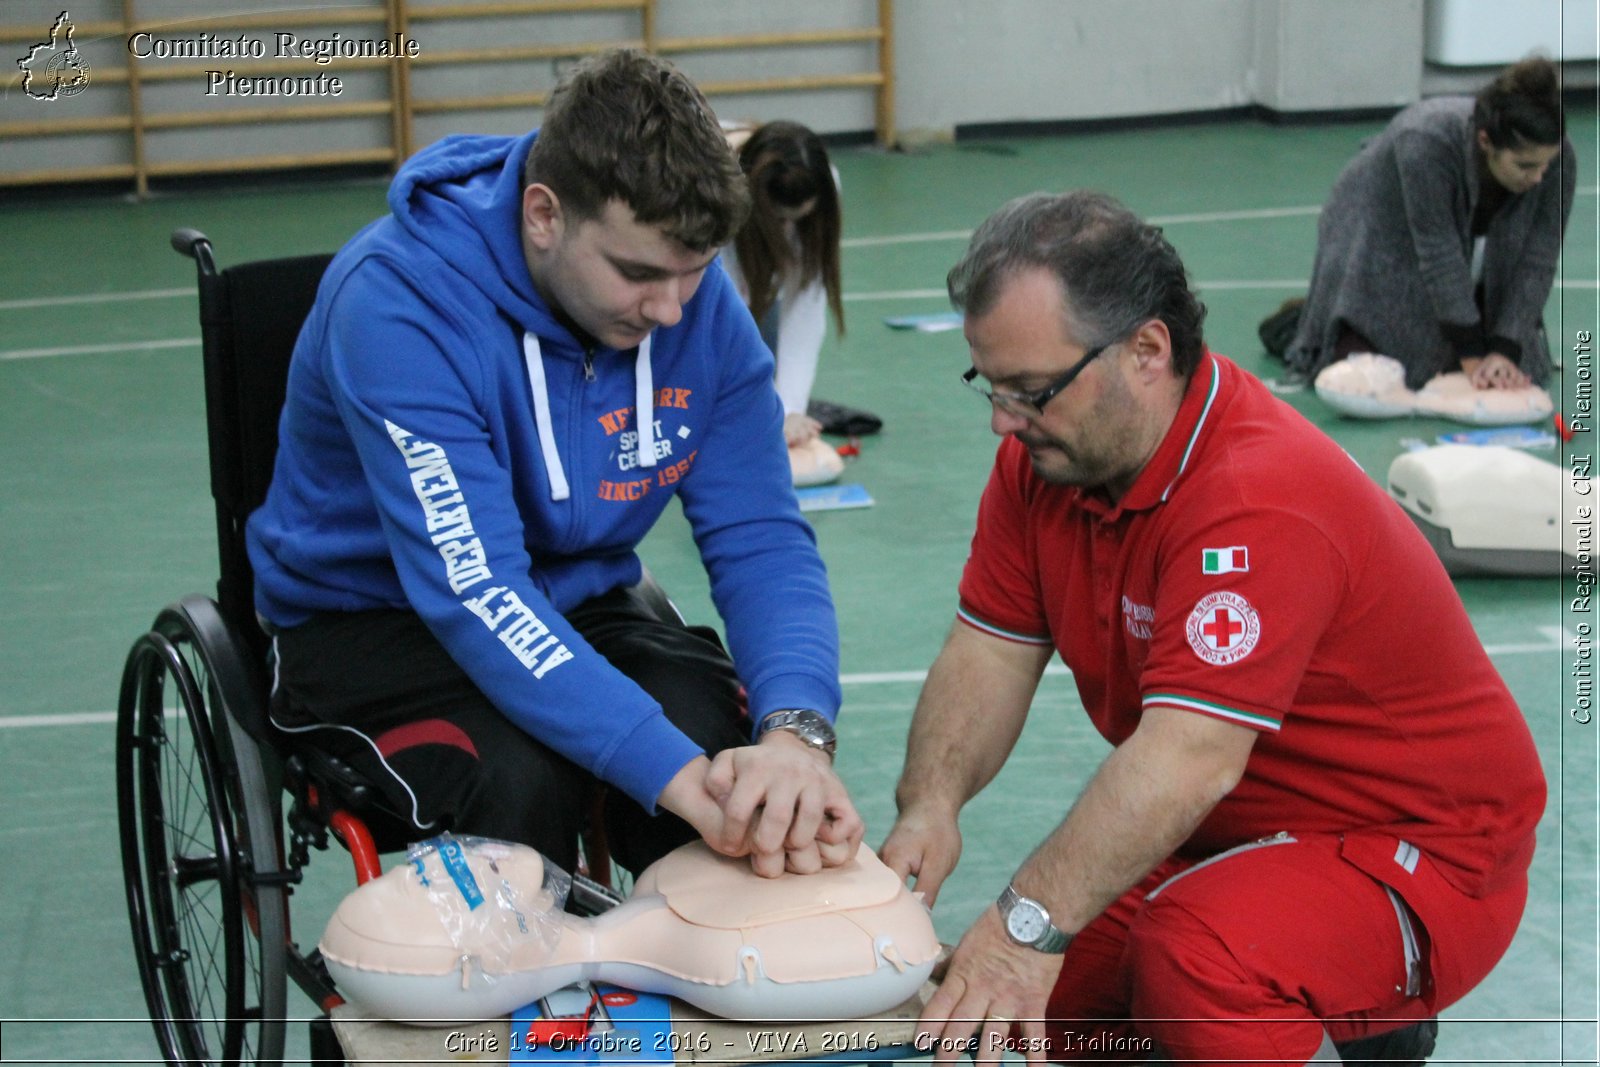 Ciri 13 Ottobre 2016 - VIVA 2016 - Croce Rossa Italiana- Comitato Regionale del Piemonte